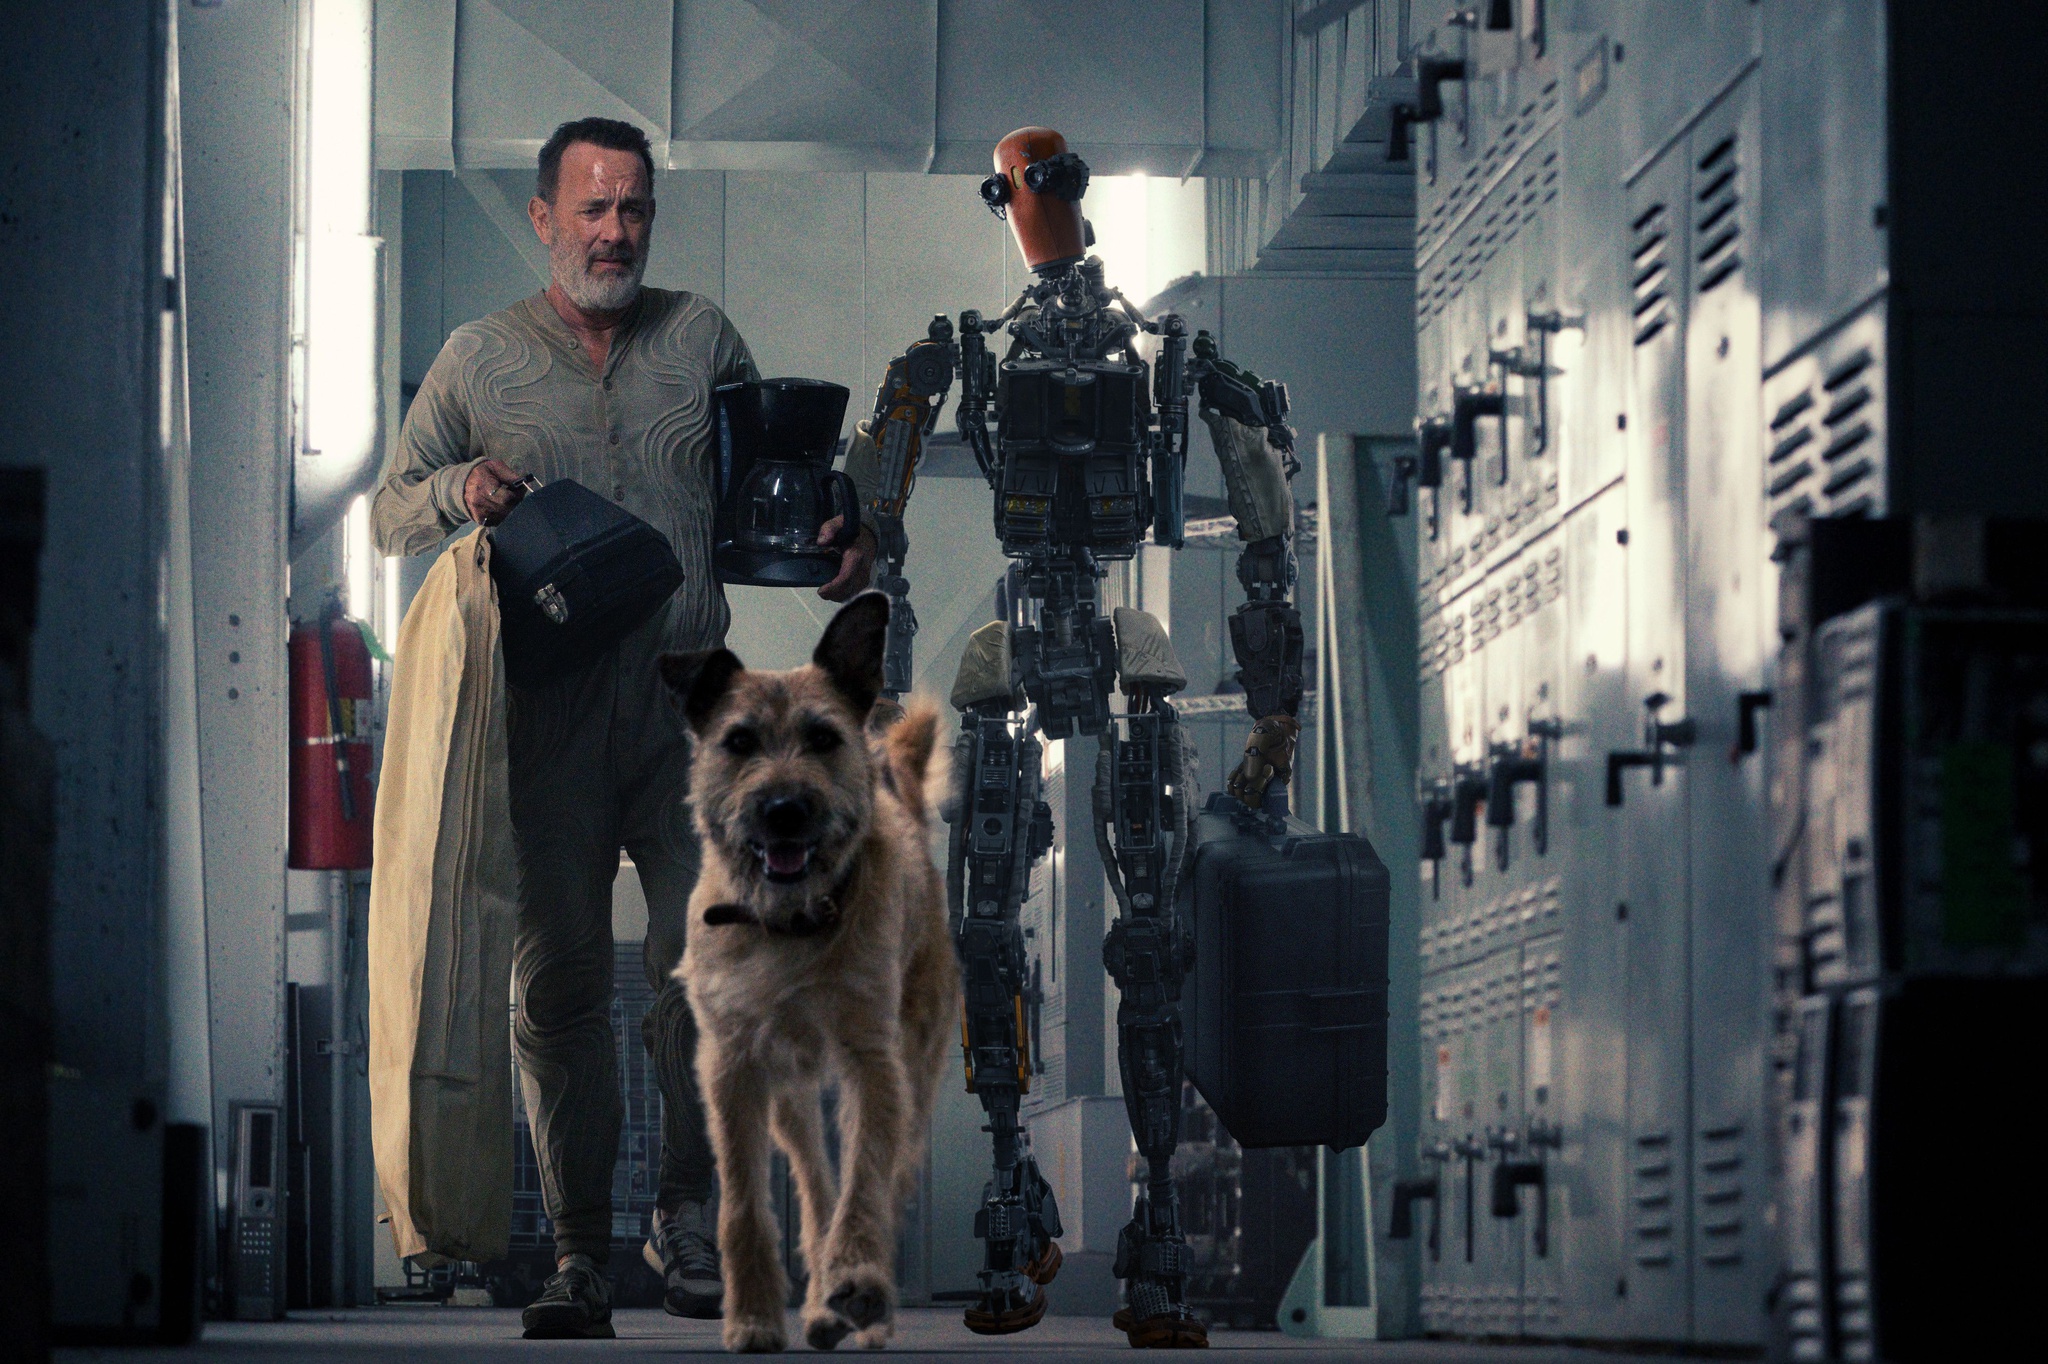 Tom Hanks bầu bạn với chú chó và robot trong “Finch” sau ngày tận thế